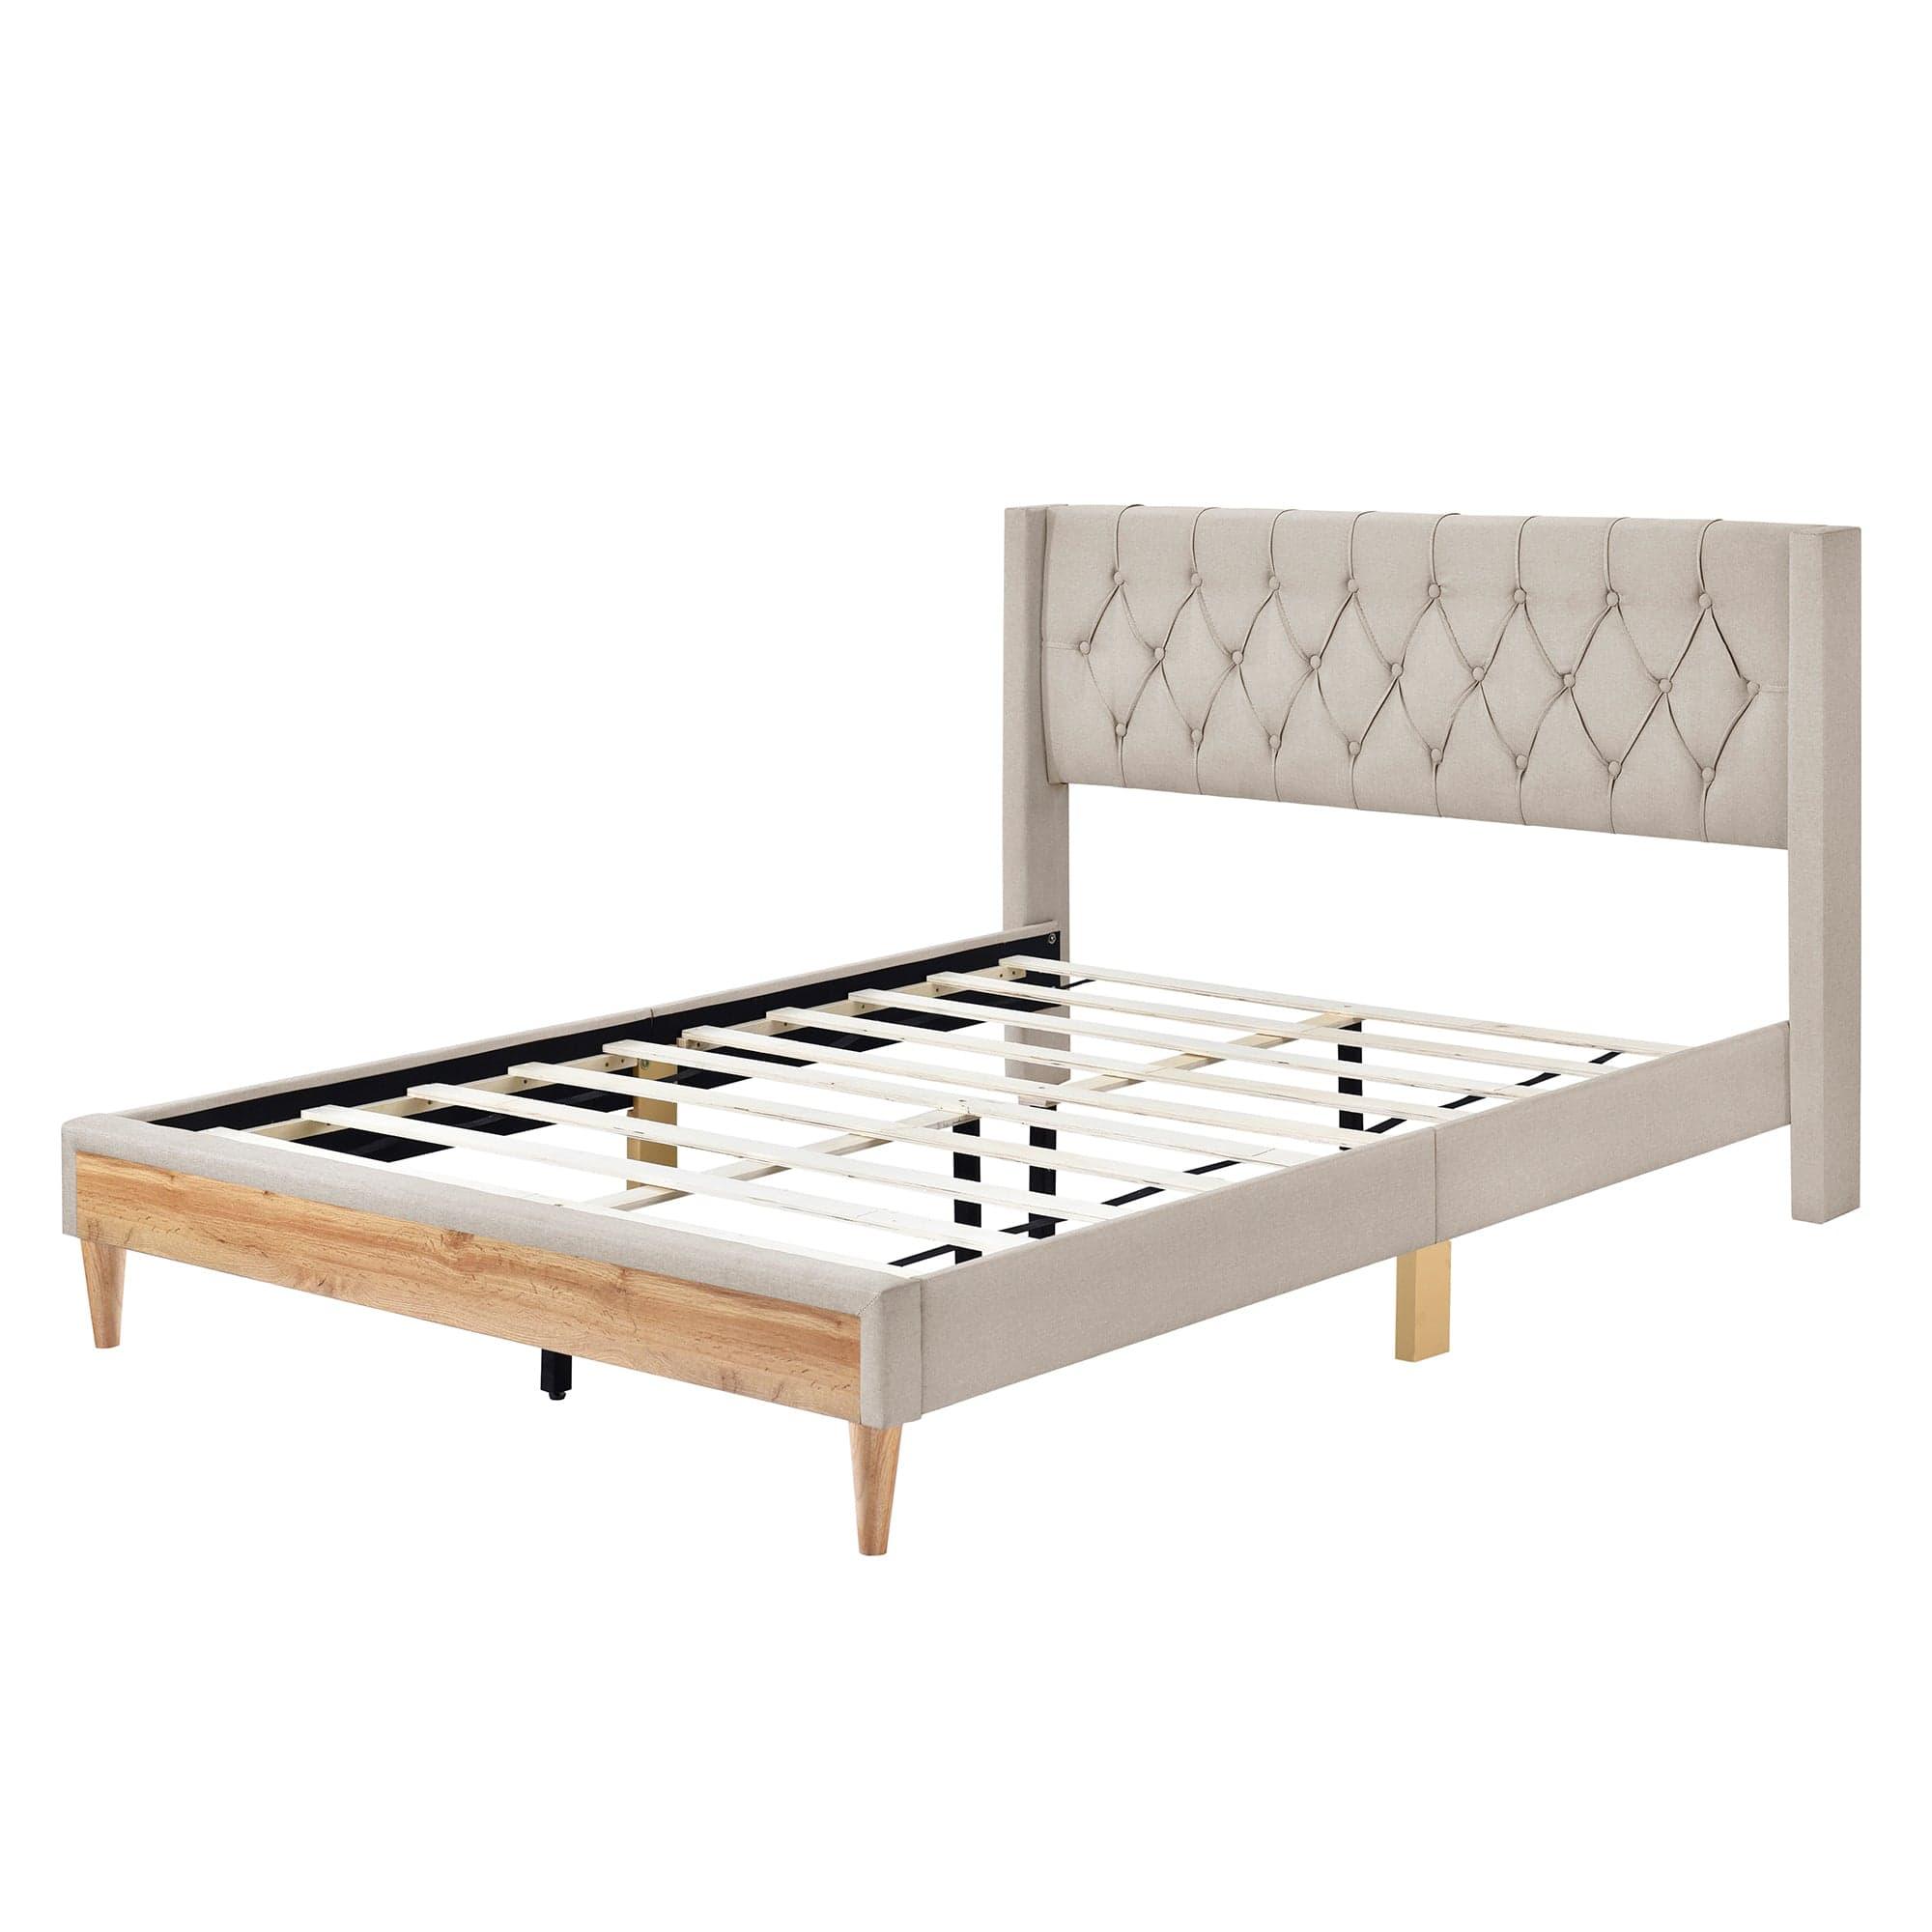 Shop Bisou Beige Upholstered Platform Bed 4pcs Bedroom Set -Queen Mademoiselle Home Decor